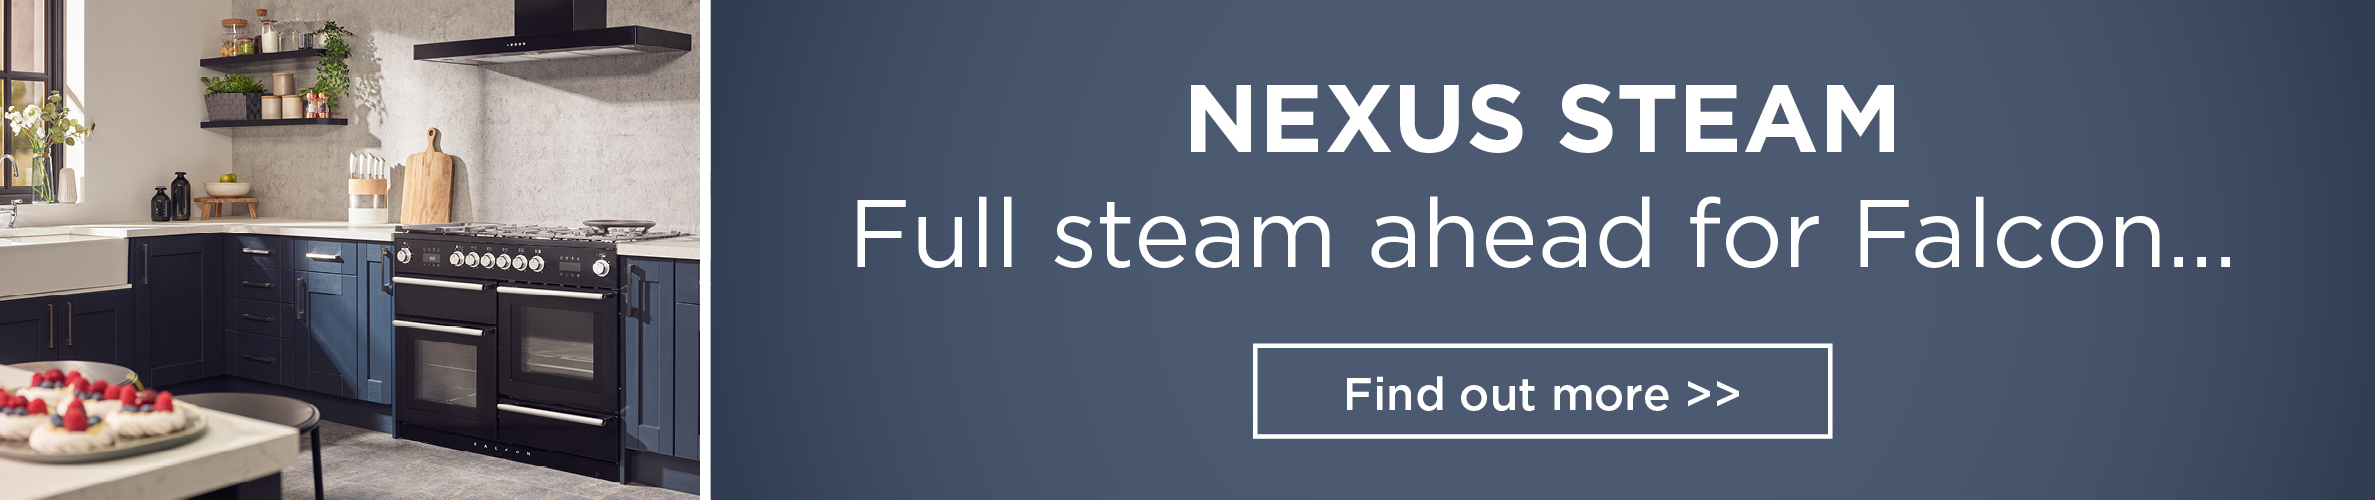 Nexus Steam